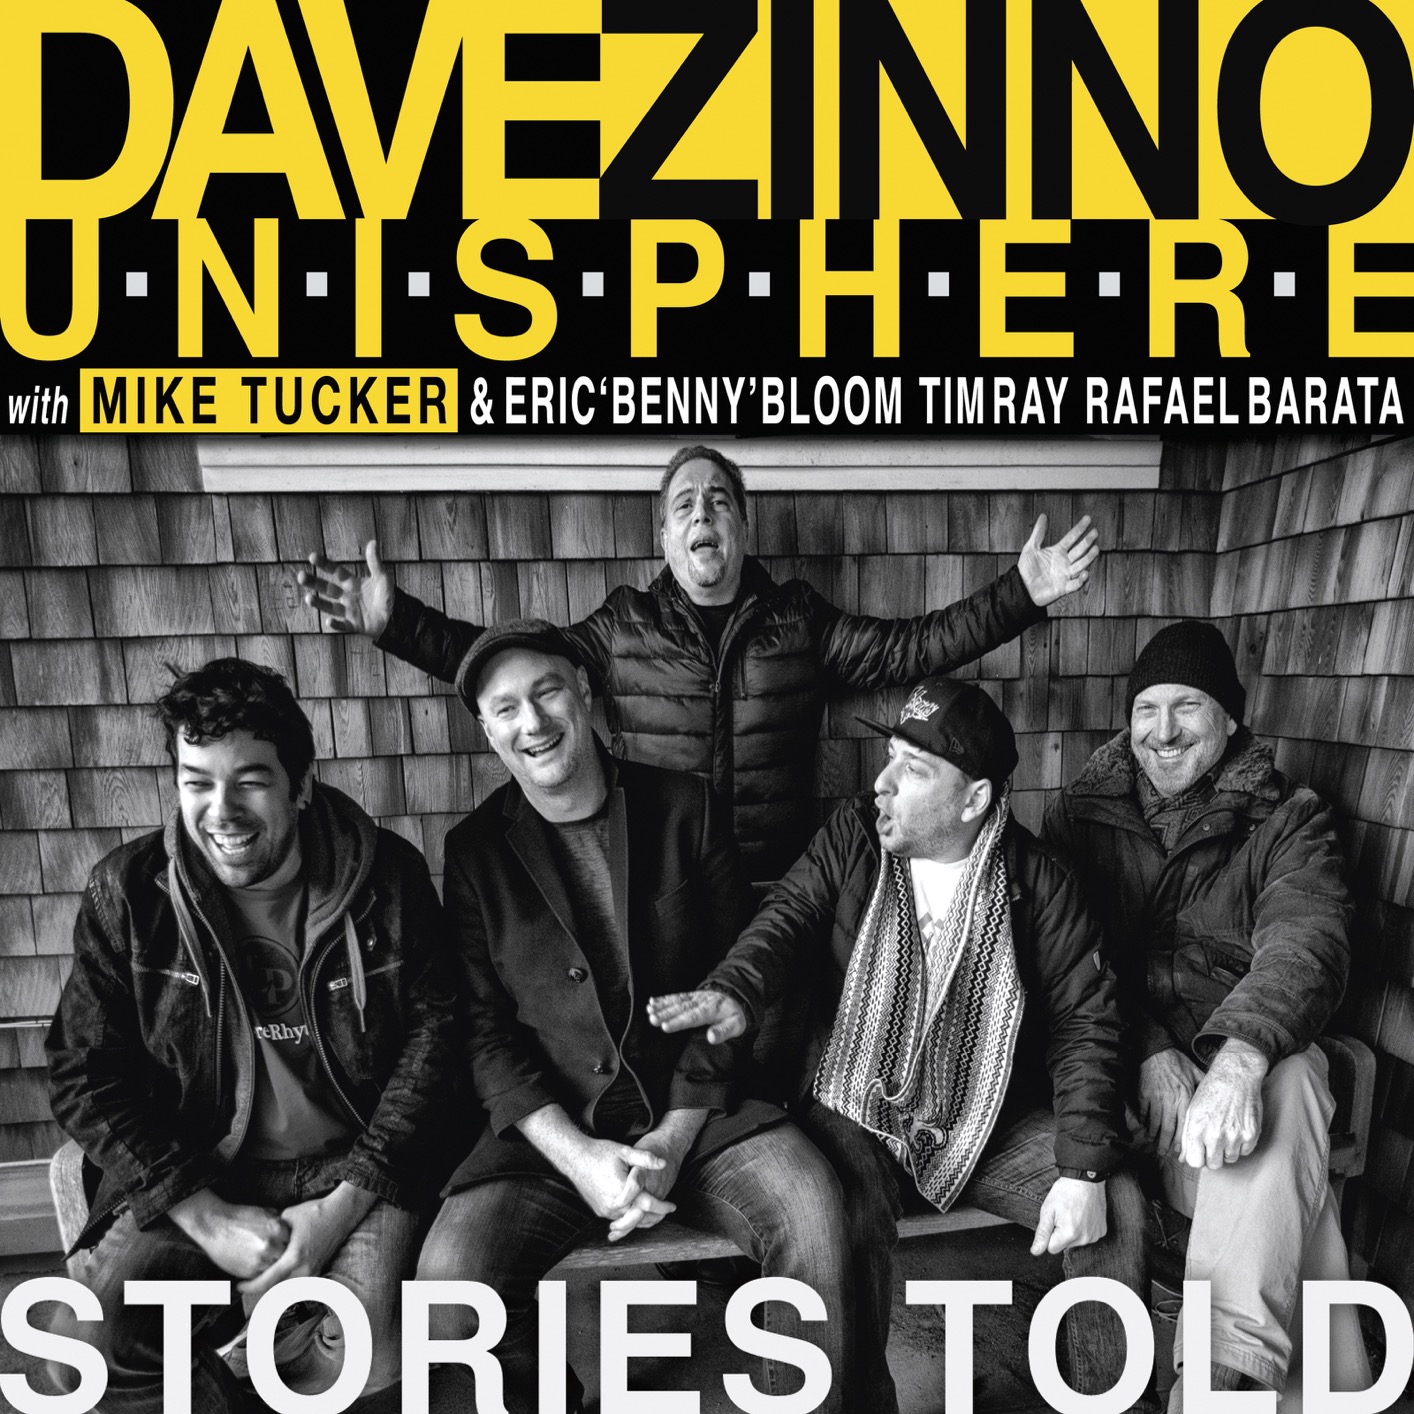 Dave Zinno Unisphere - Stories Told (2019) [FLAC 24bit/44,1kHz]